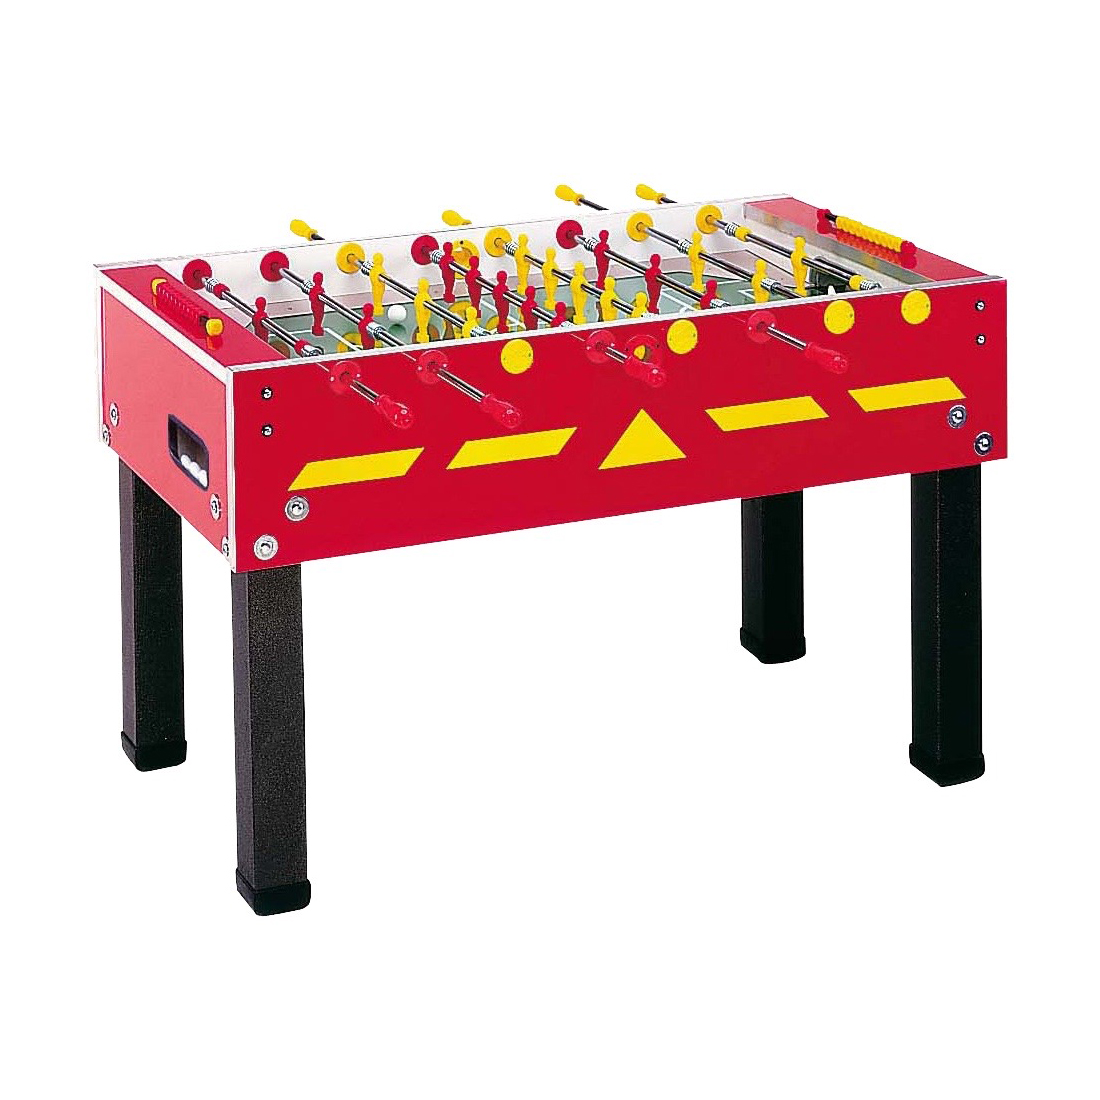 Garlando-G-500-Red-Outdoor-Foosball-Table-1.jpg